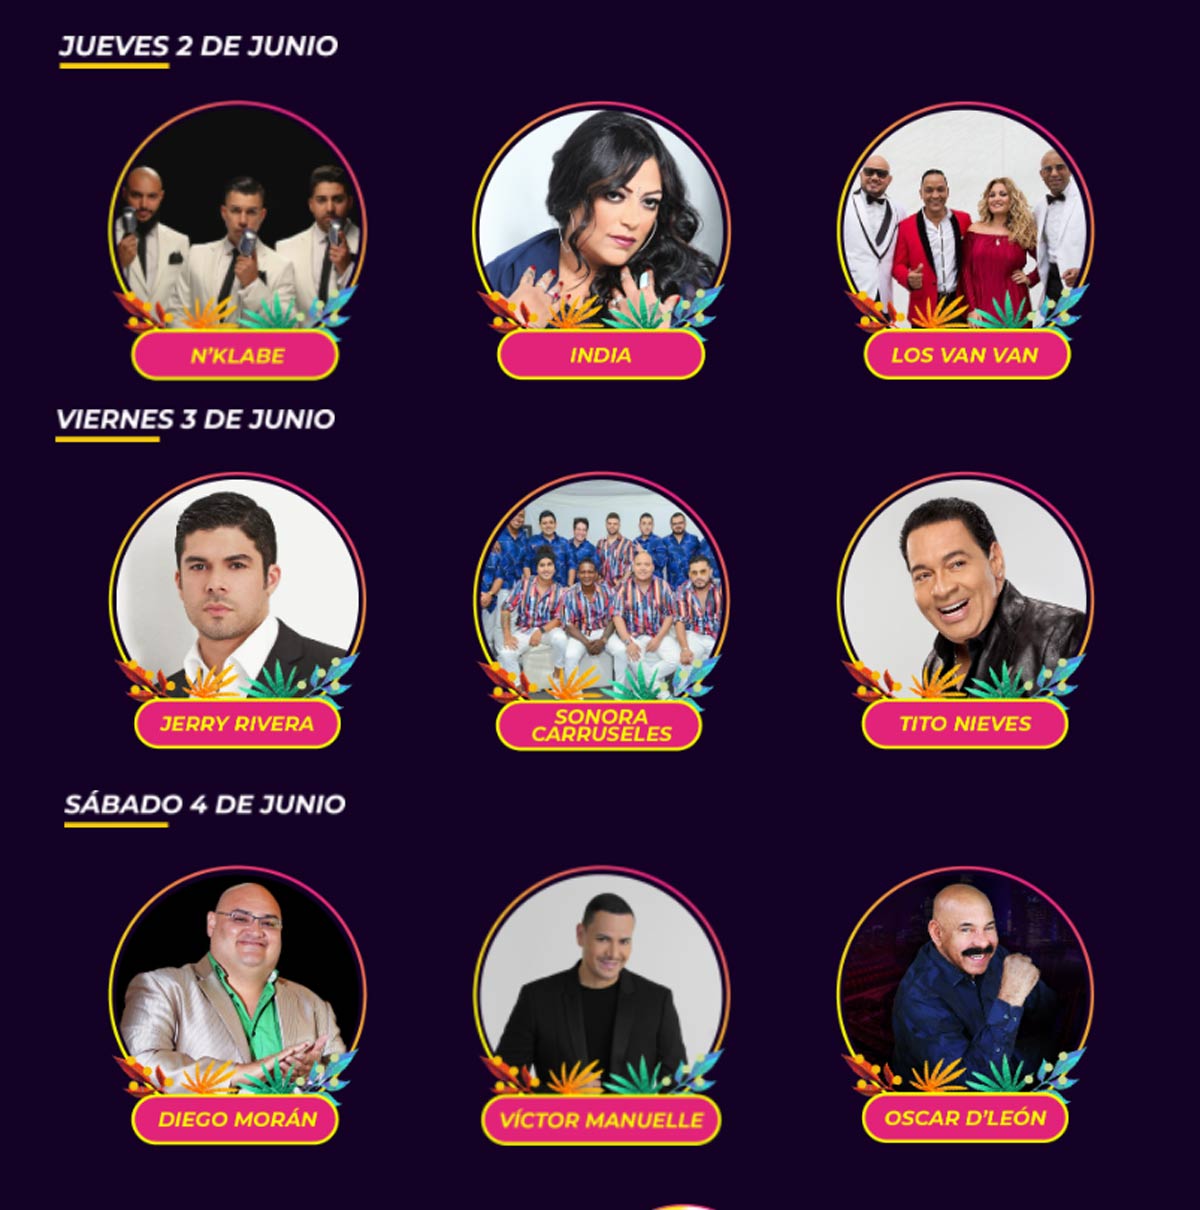 Festival de la Salsa Veracruz 2022: Fechas, artistas y boletos